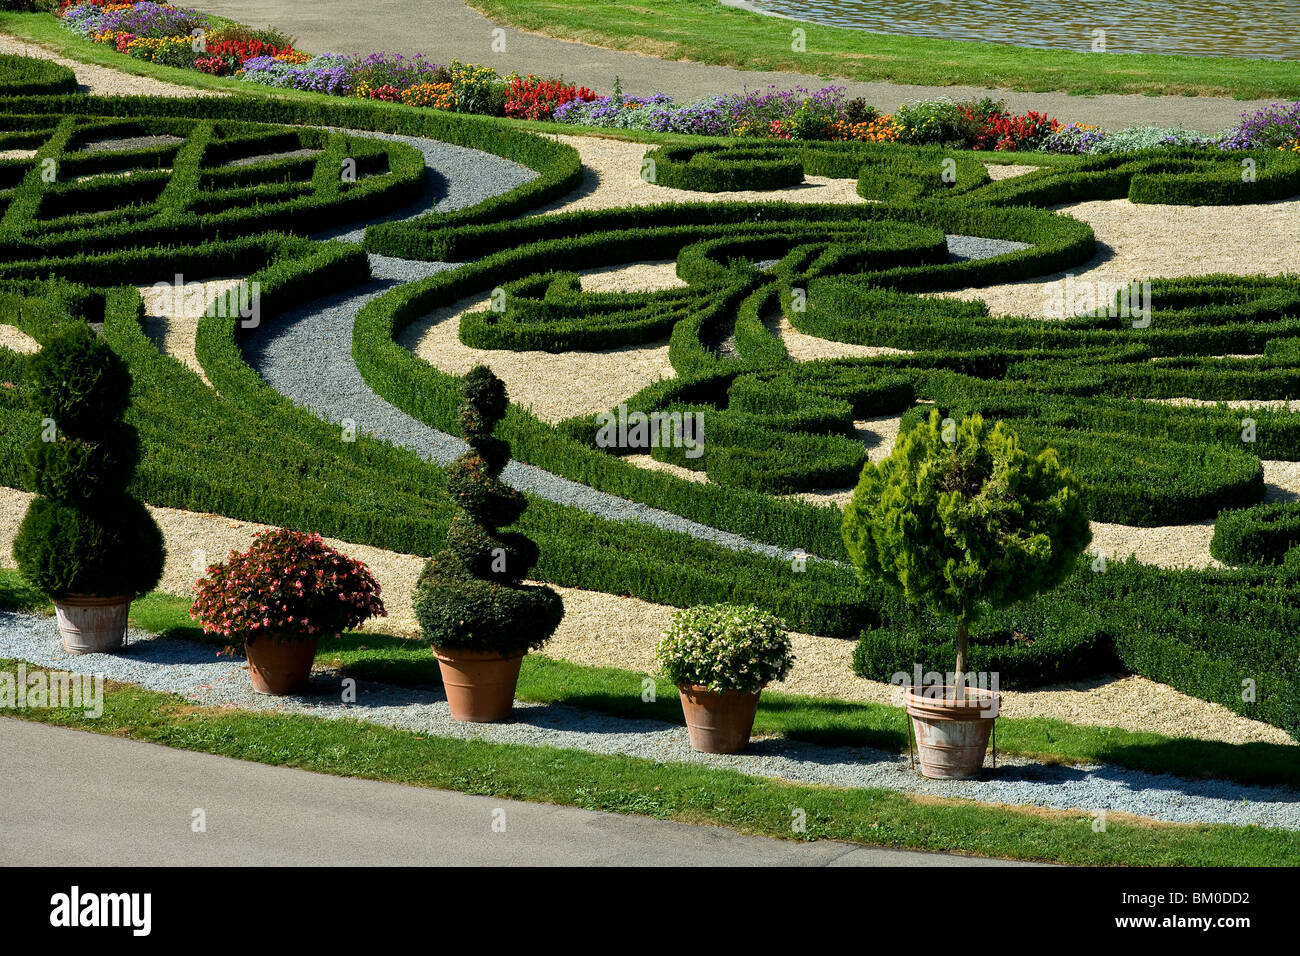 Palace gardens at Ludwigsburg palace, Ludwigsburg, Baden-Wuerttemberg, Germany, Europe Stock Photo